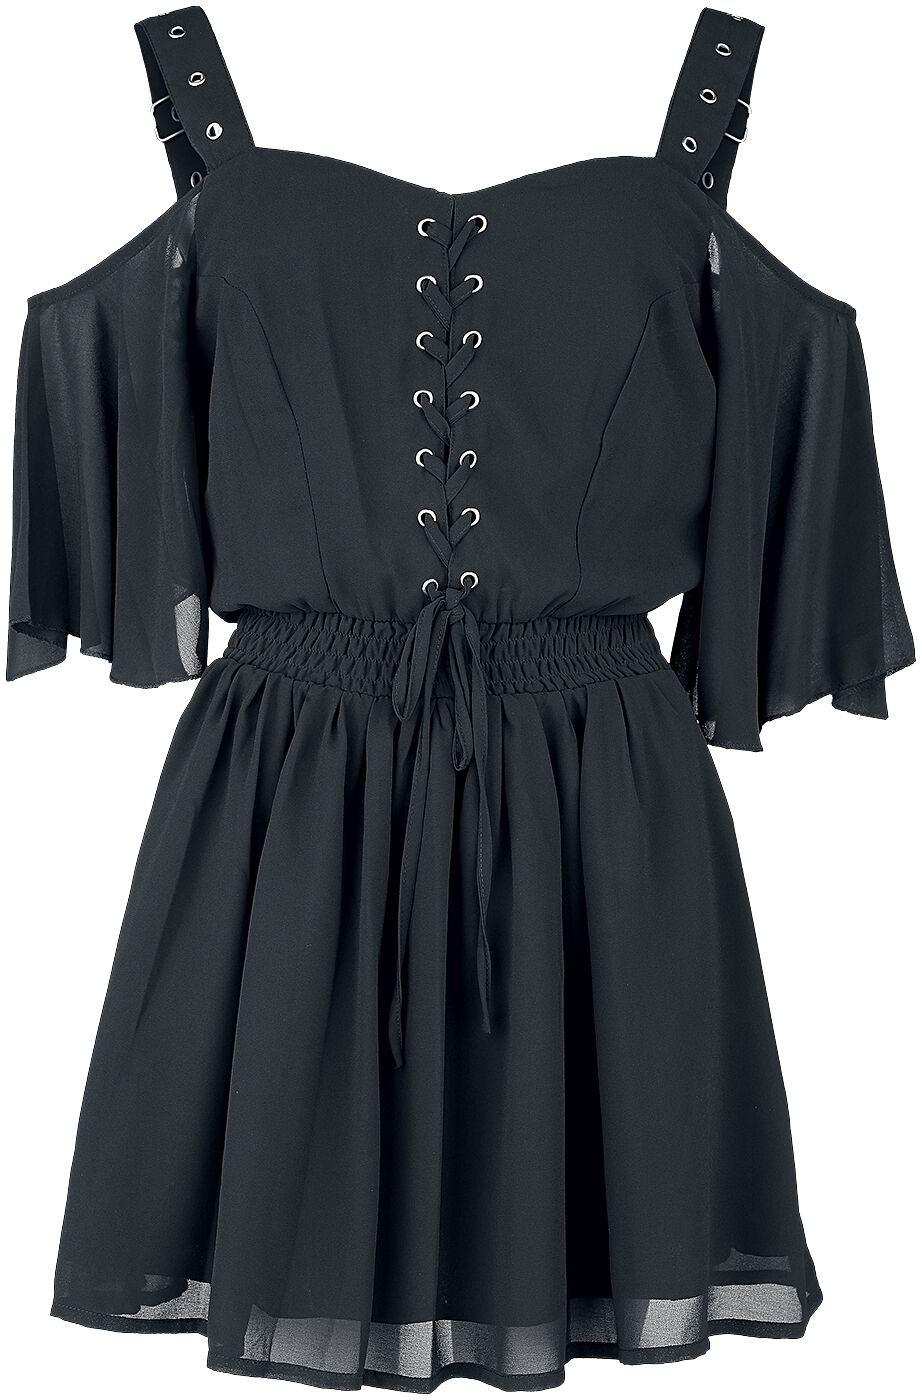 Poizen Industries - Gothic Kurzes Kleid - Catastrophe Dress - XS bis 4XL - für Damen - Größe XS - schwarz